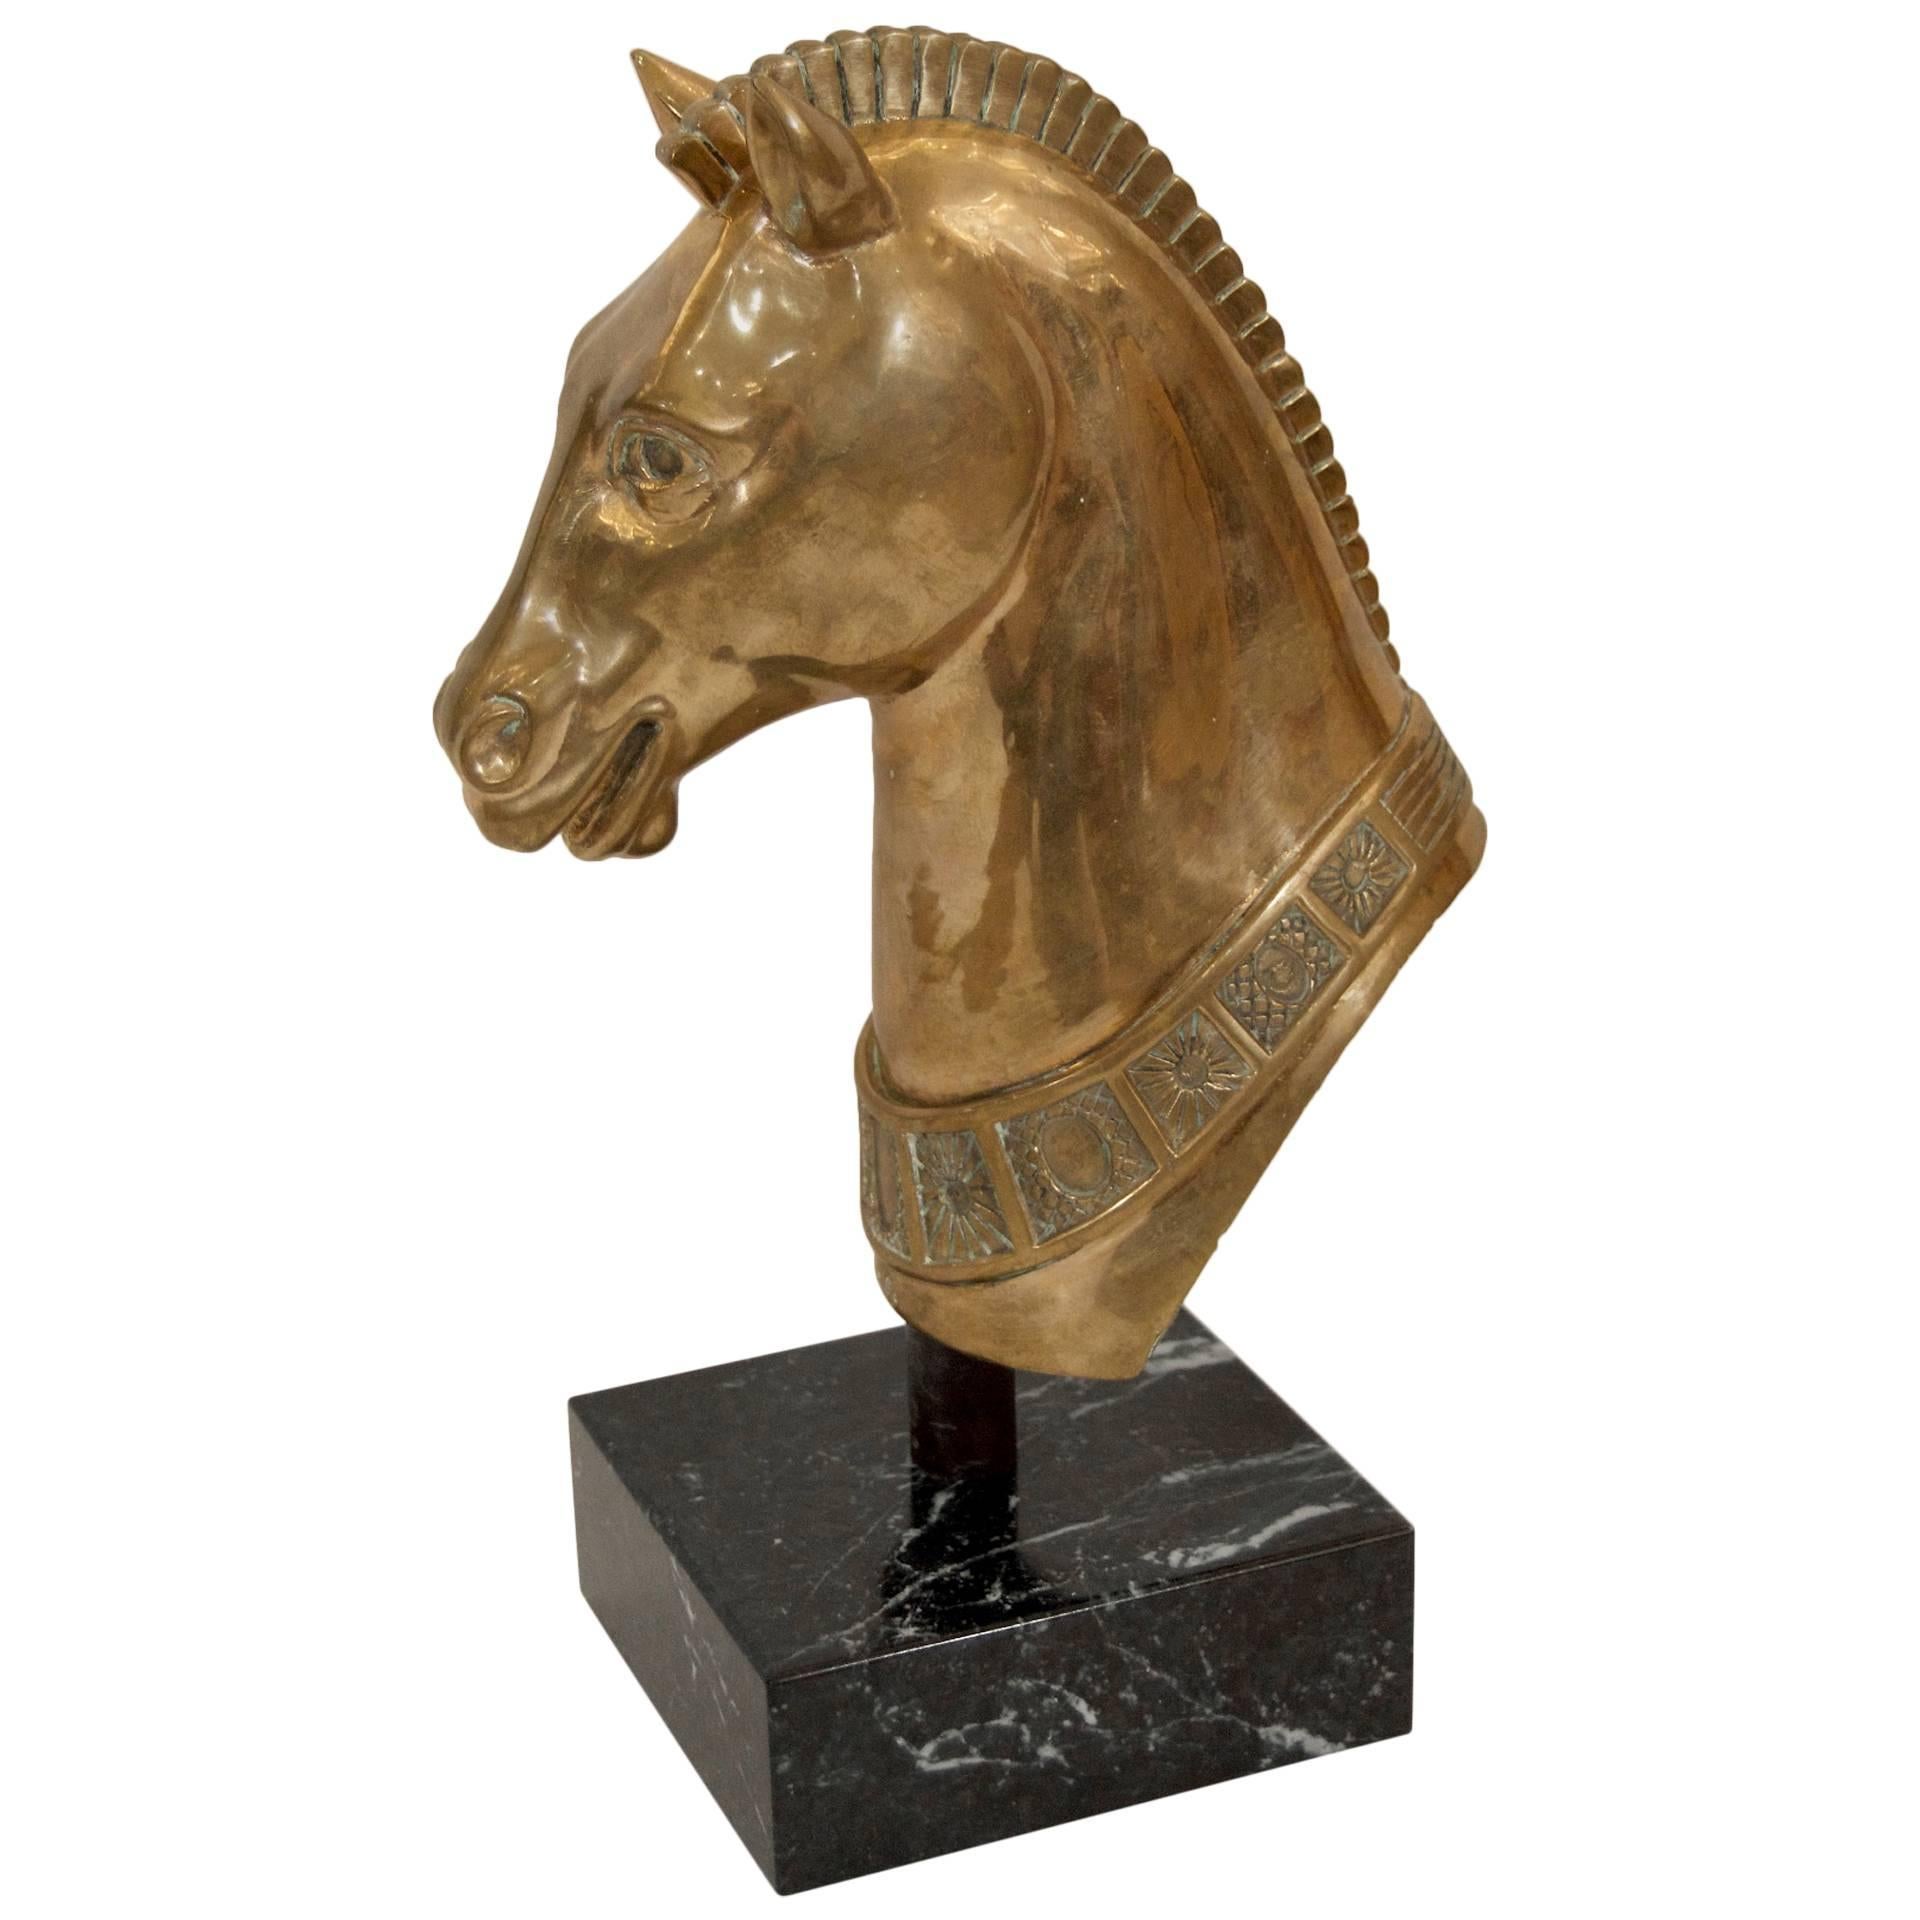 Sculpture en laiton massif bien détaillée d'une tête de cheval sur une base en marbre.

